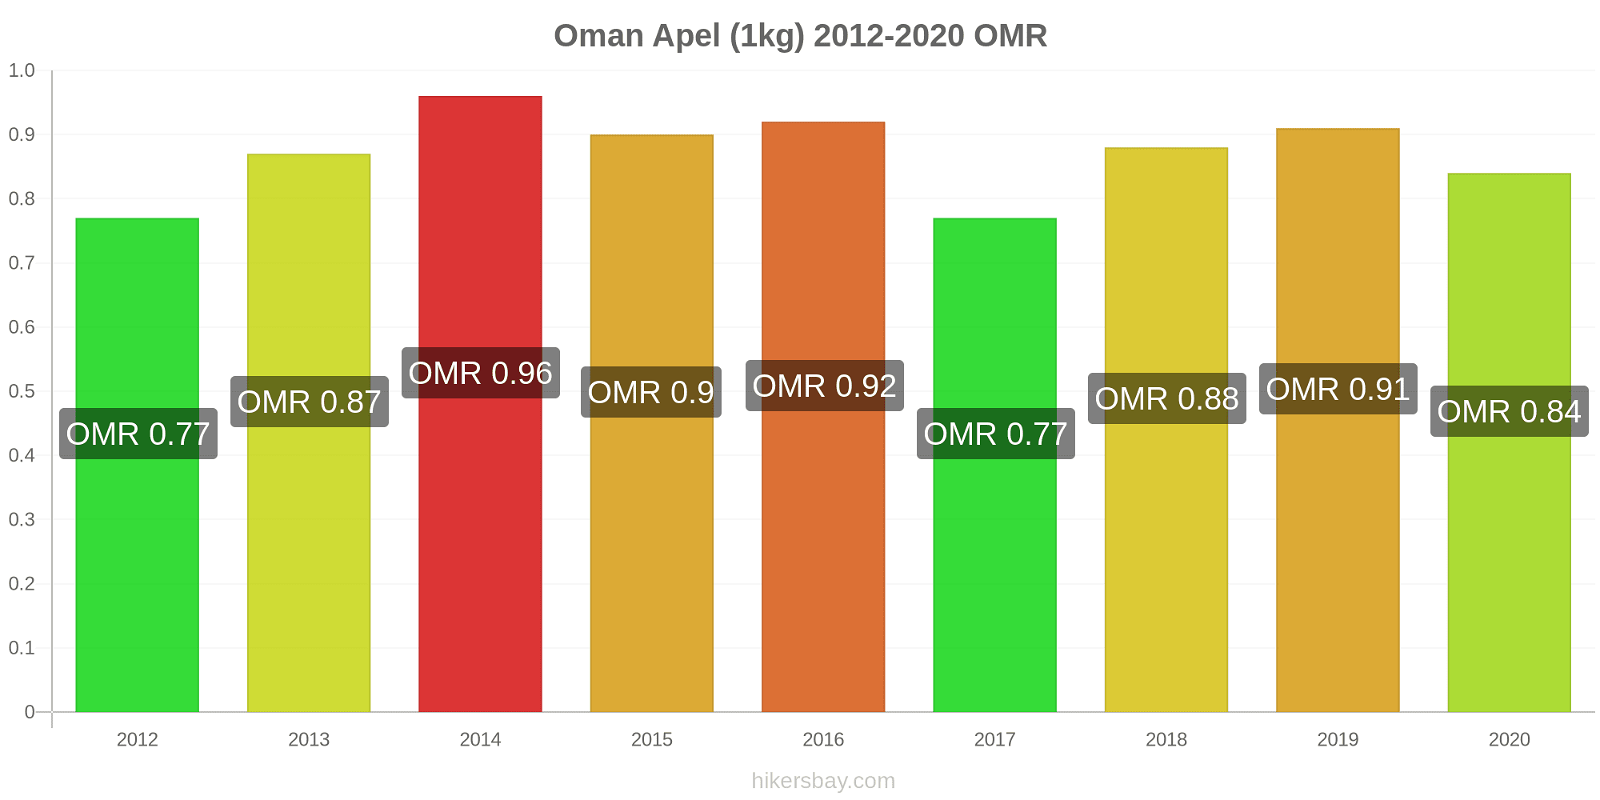 Oman perubahan harga Apel (1kg) hikersbay.com